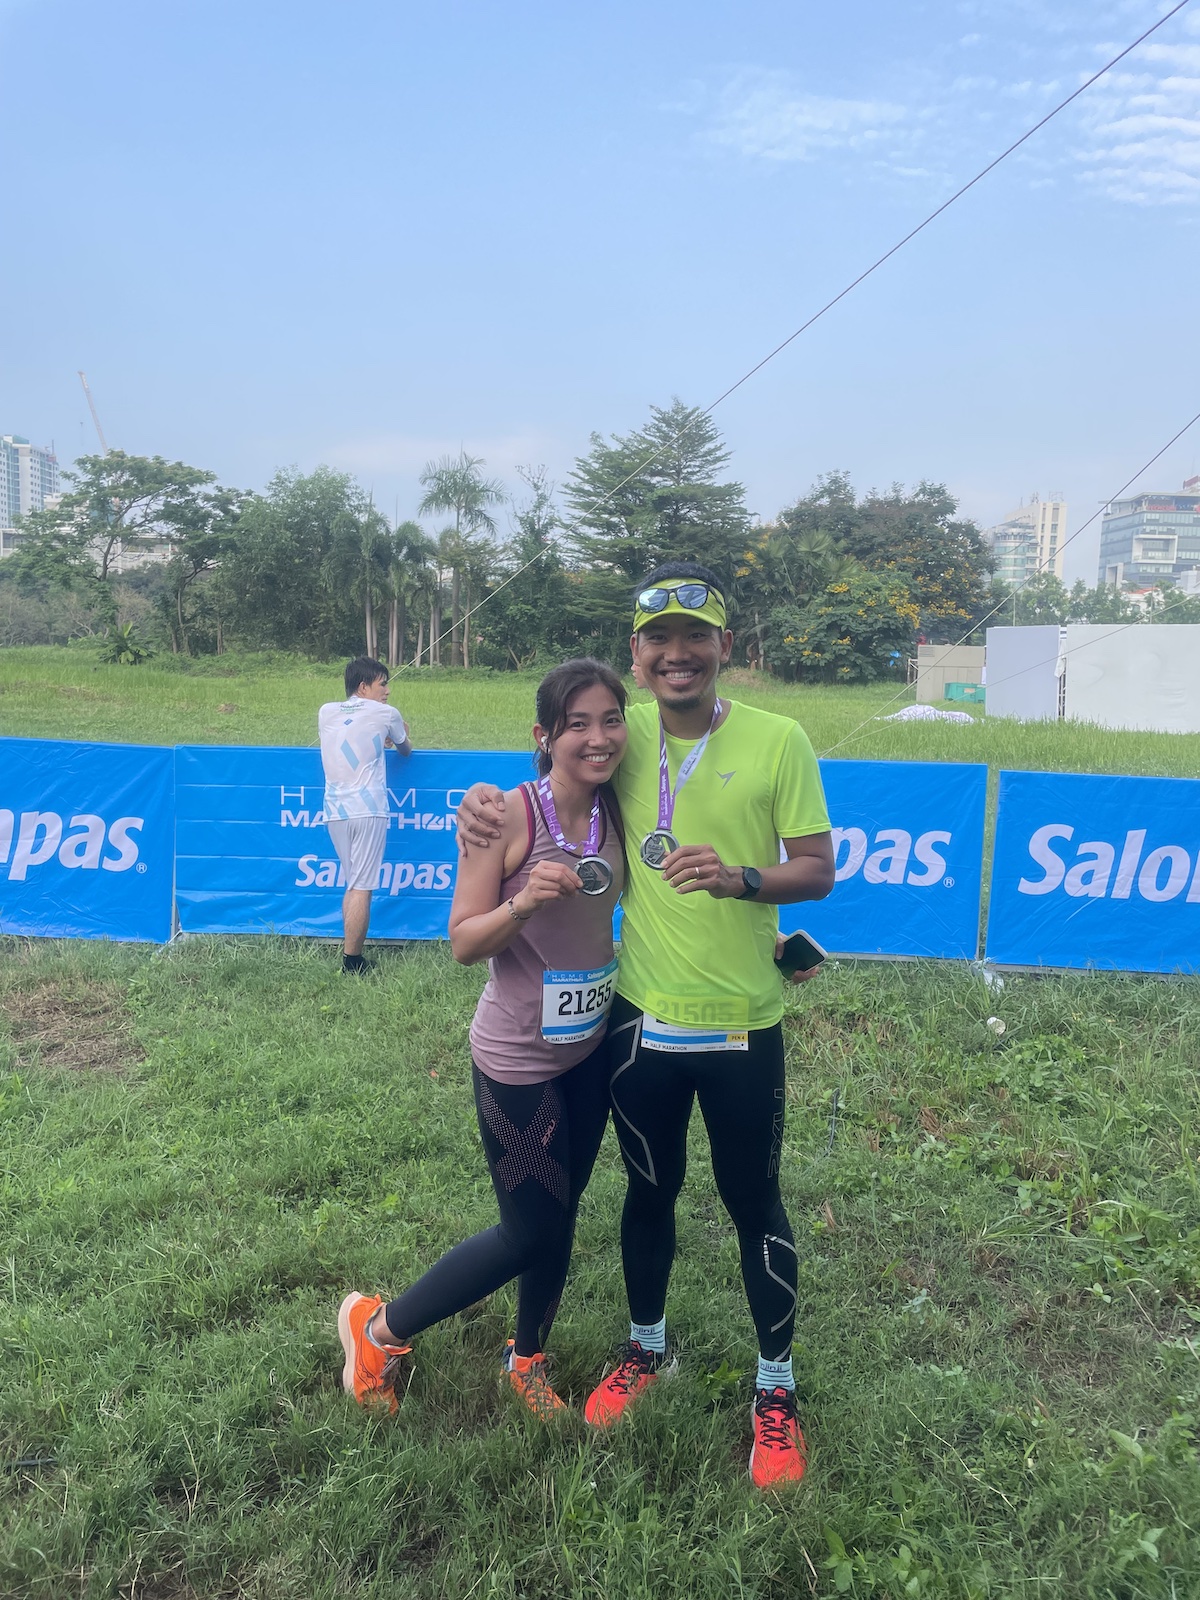 Kí sự HCMC Marathon 2022 - Lần đầu đua 21K với vợ - hcmc marathon thuan bui va vo